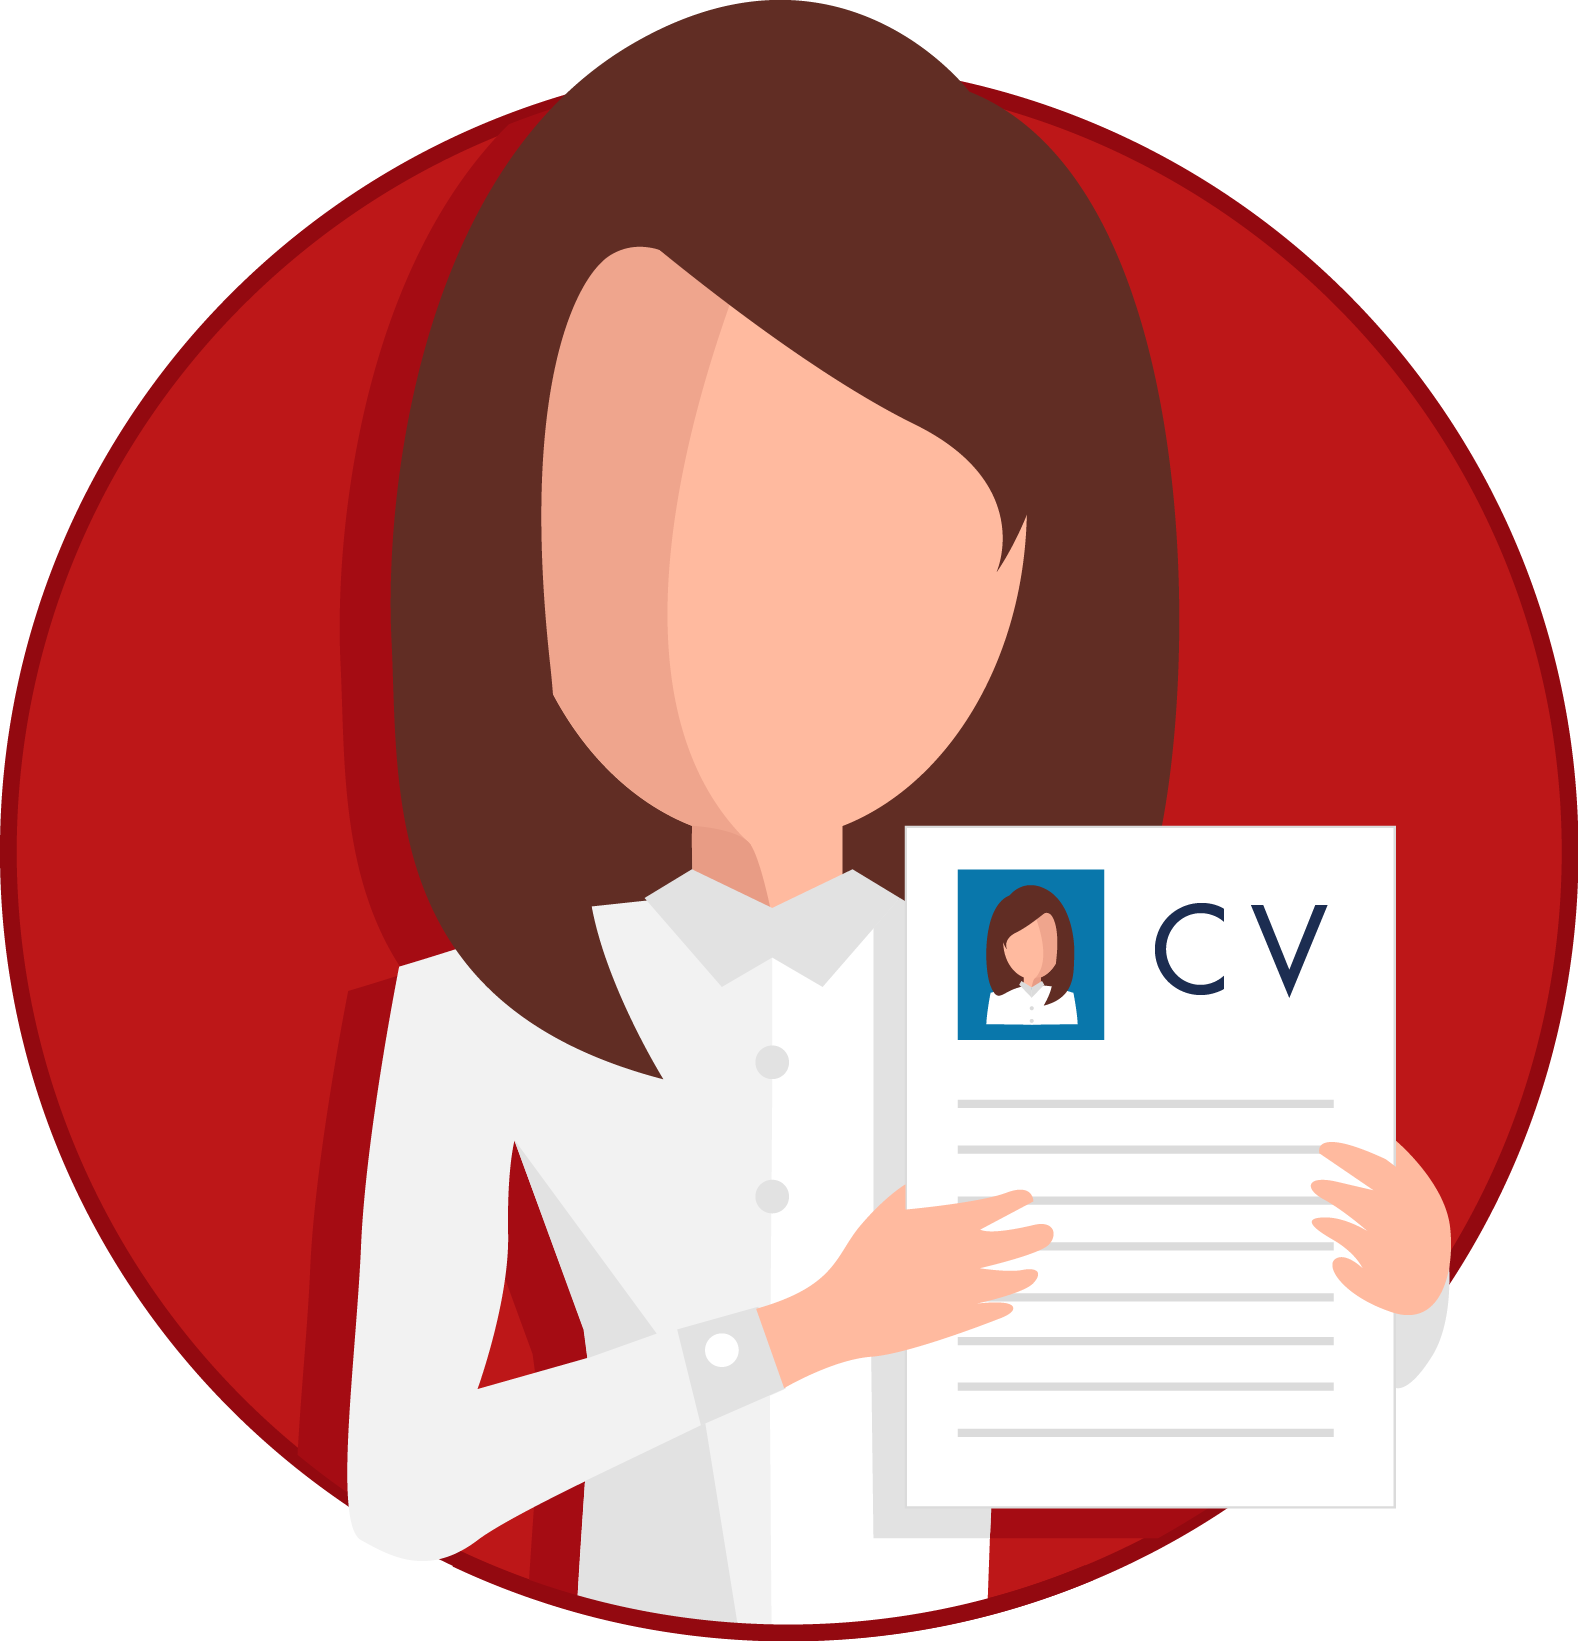 CV Resume Transparent Background